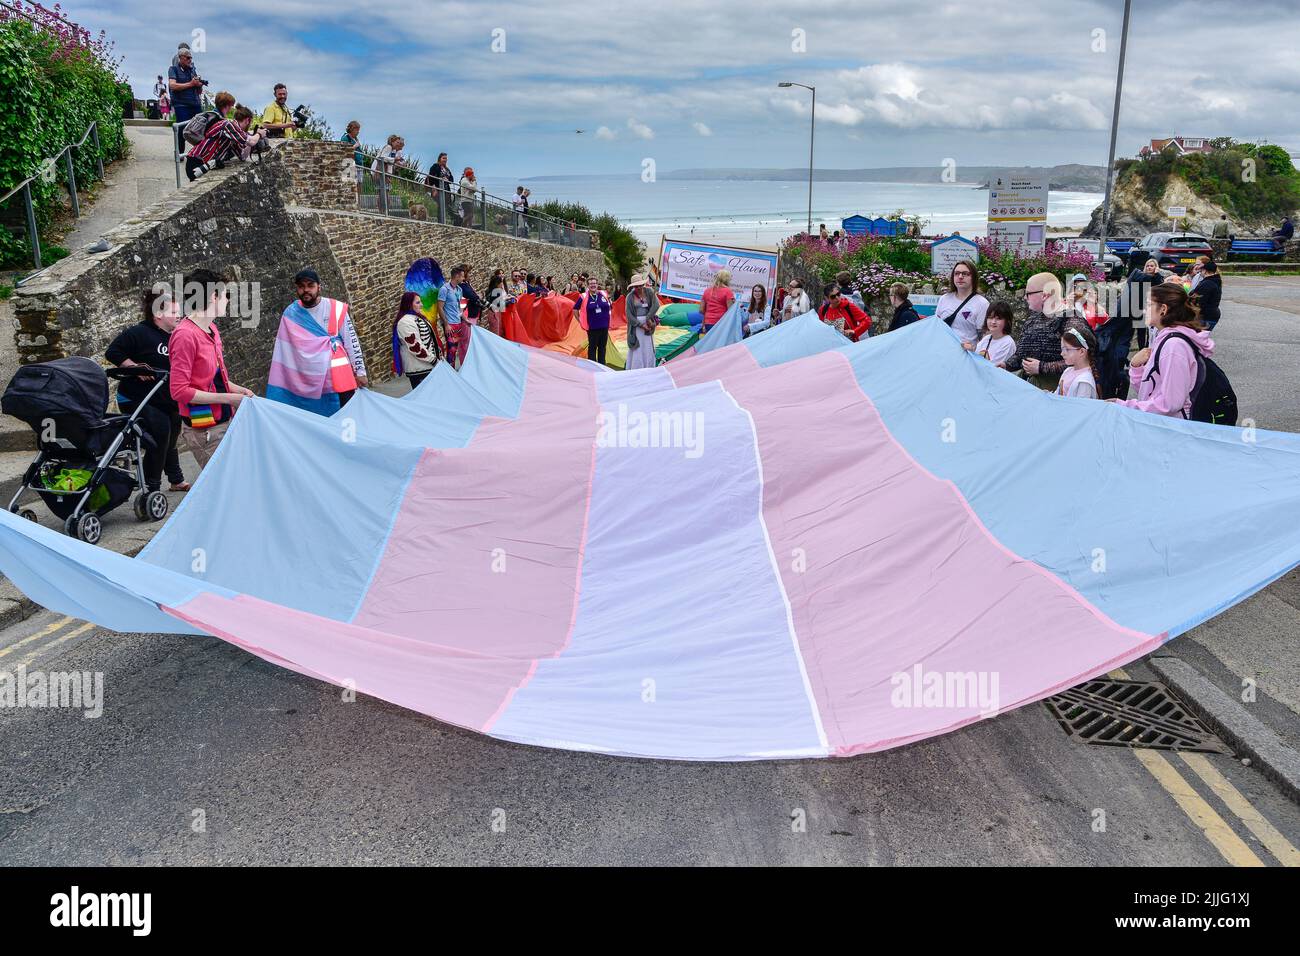 La Bandera de Orgullo Transgénero celebrada por los participantes en el desfile de Orgullo de Cornwall Pride en el centro de Newquay en el Reino Unido. Foto de stock